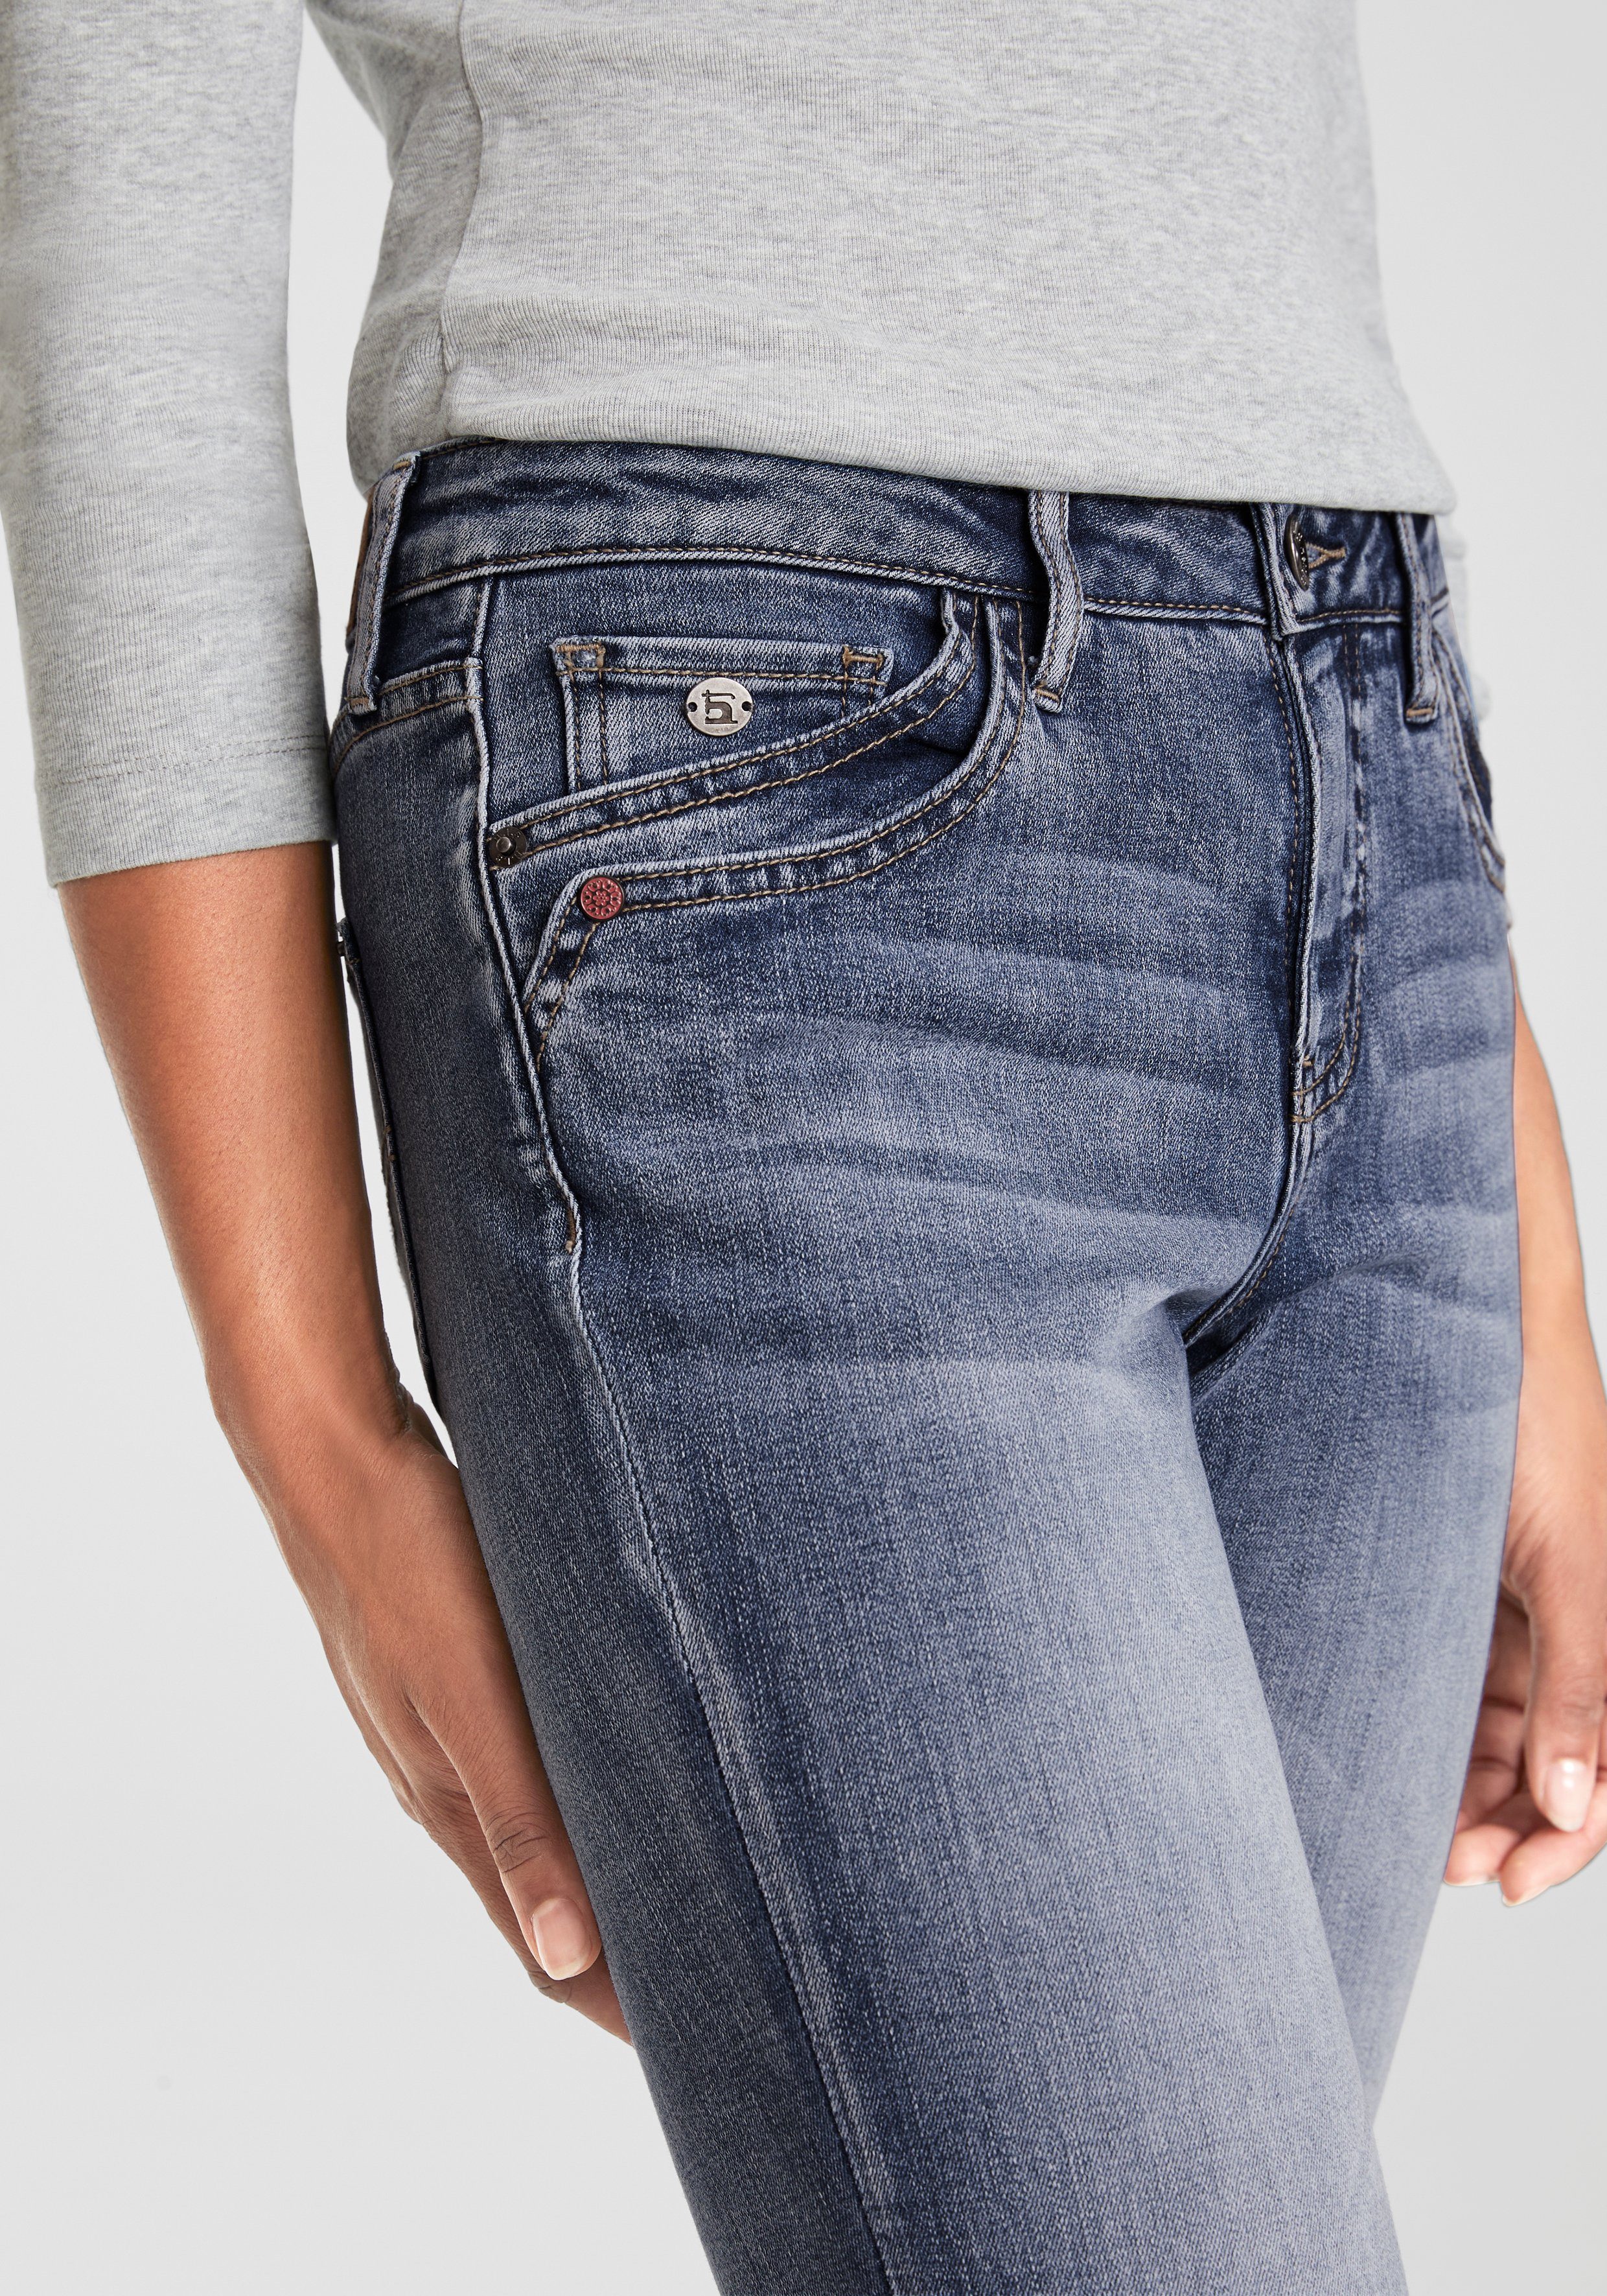 H.I.S 5-pocket jeans AriaMS ecologische waterbesparende productie door ozon wash